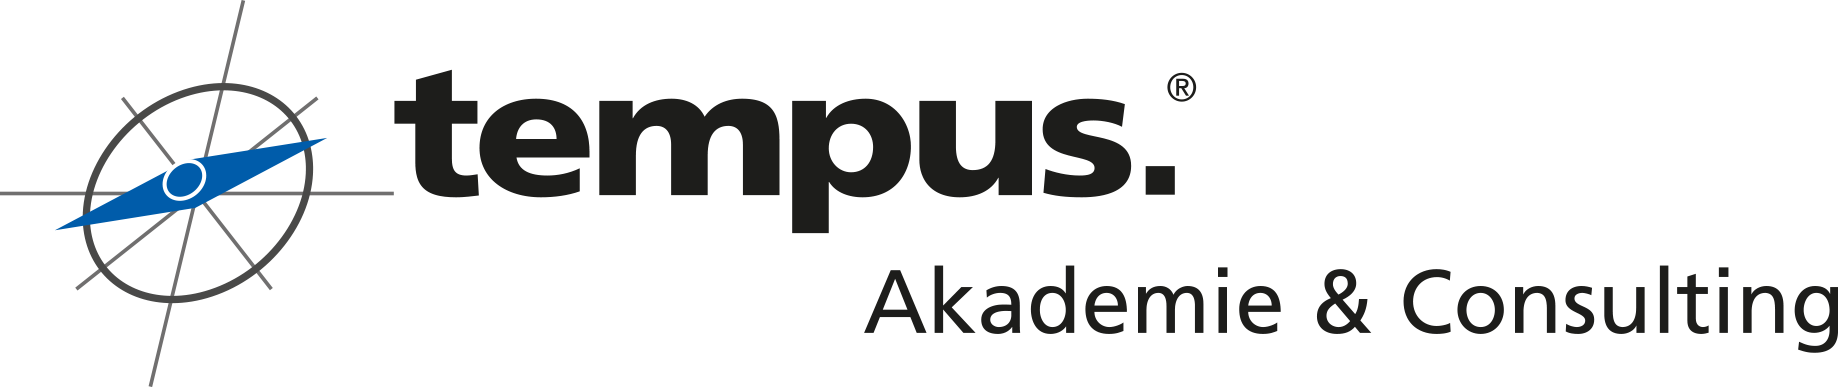 Logo tempus-akademie-consulting